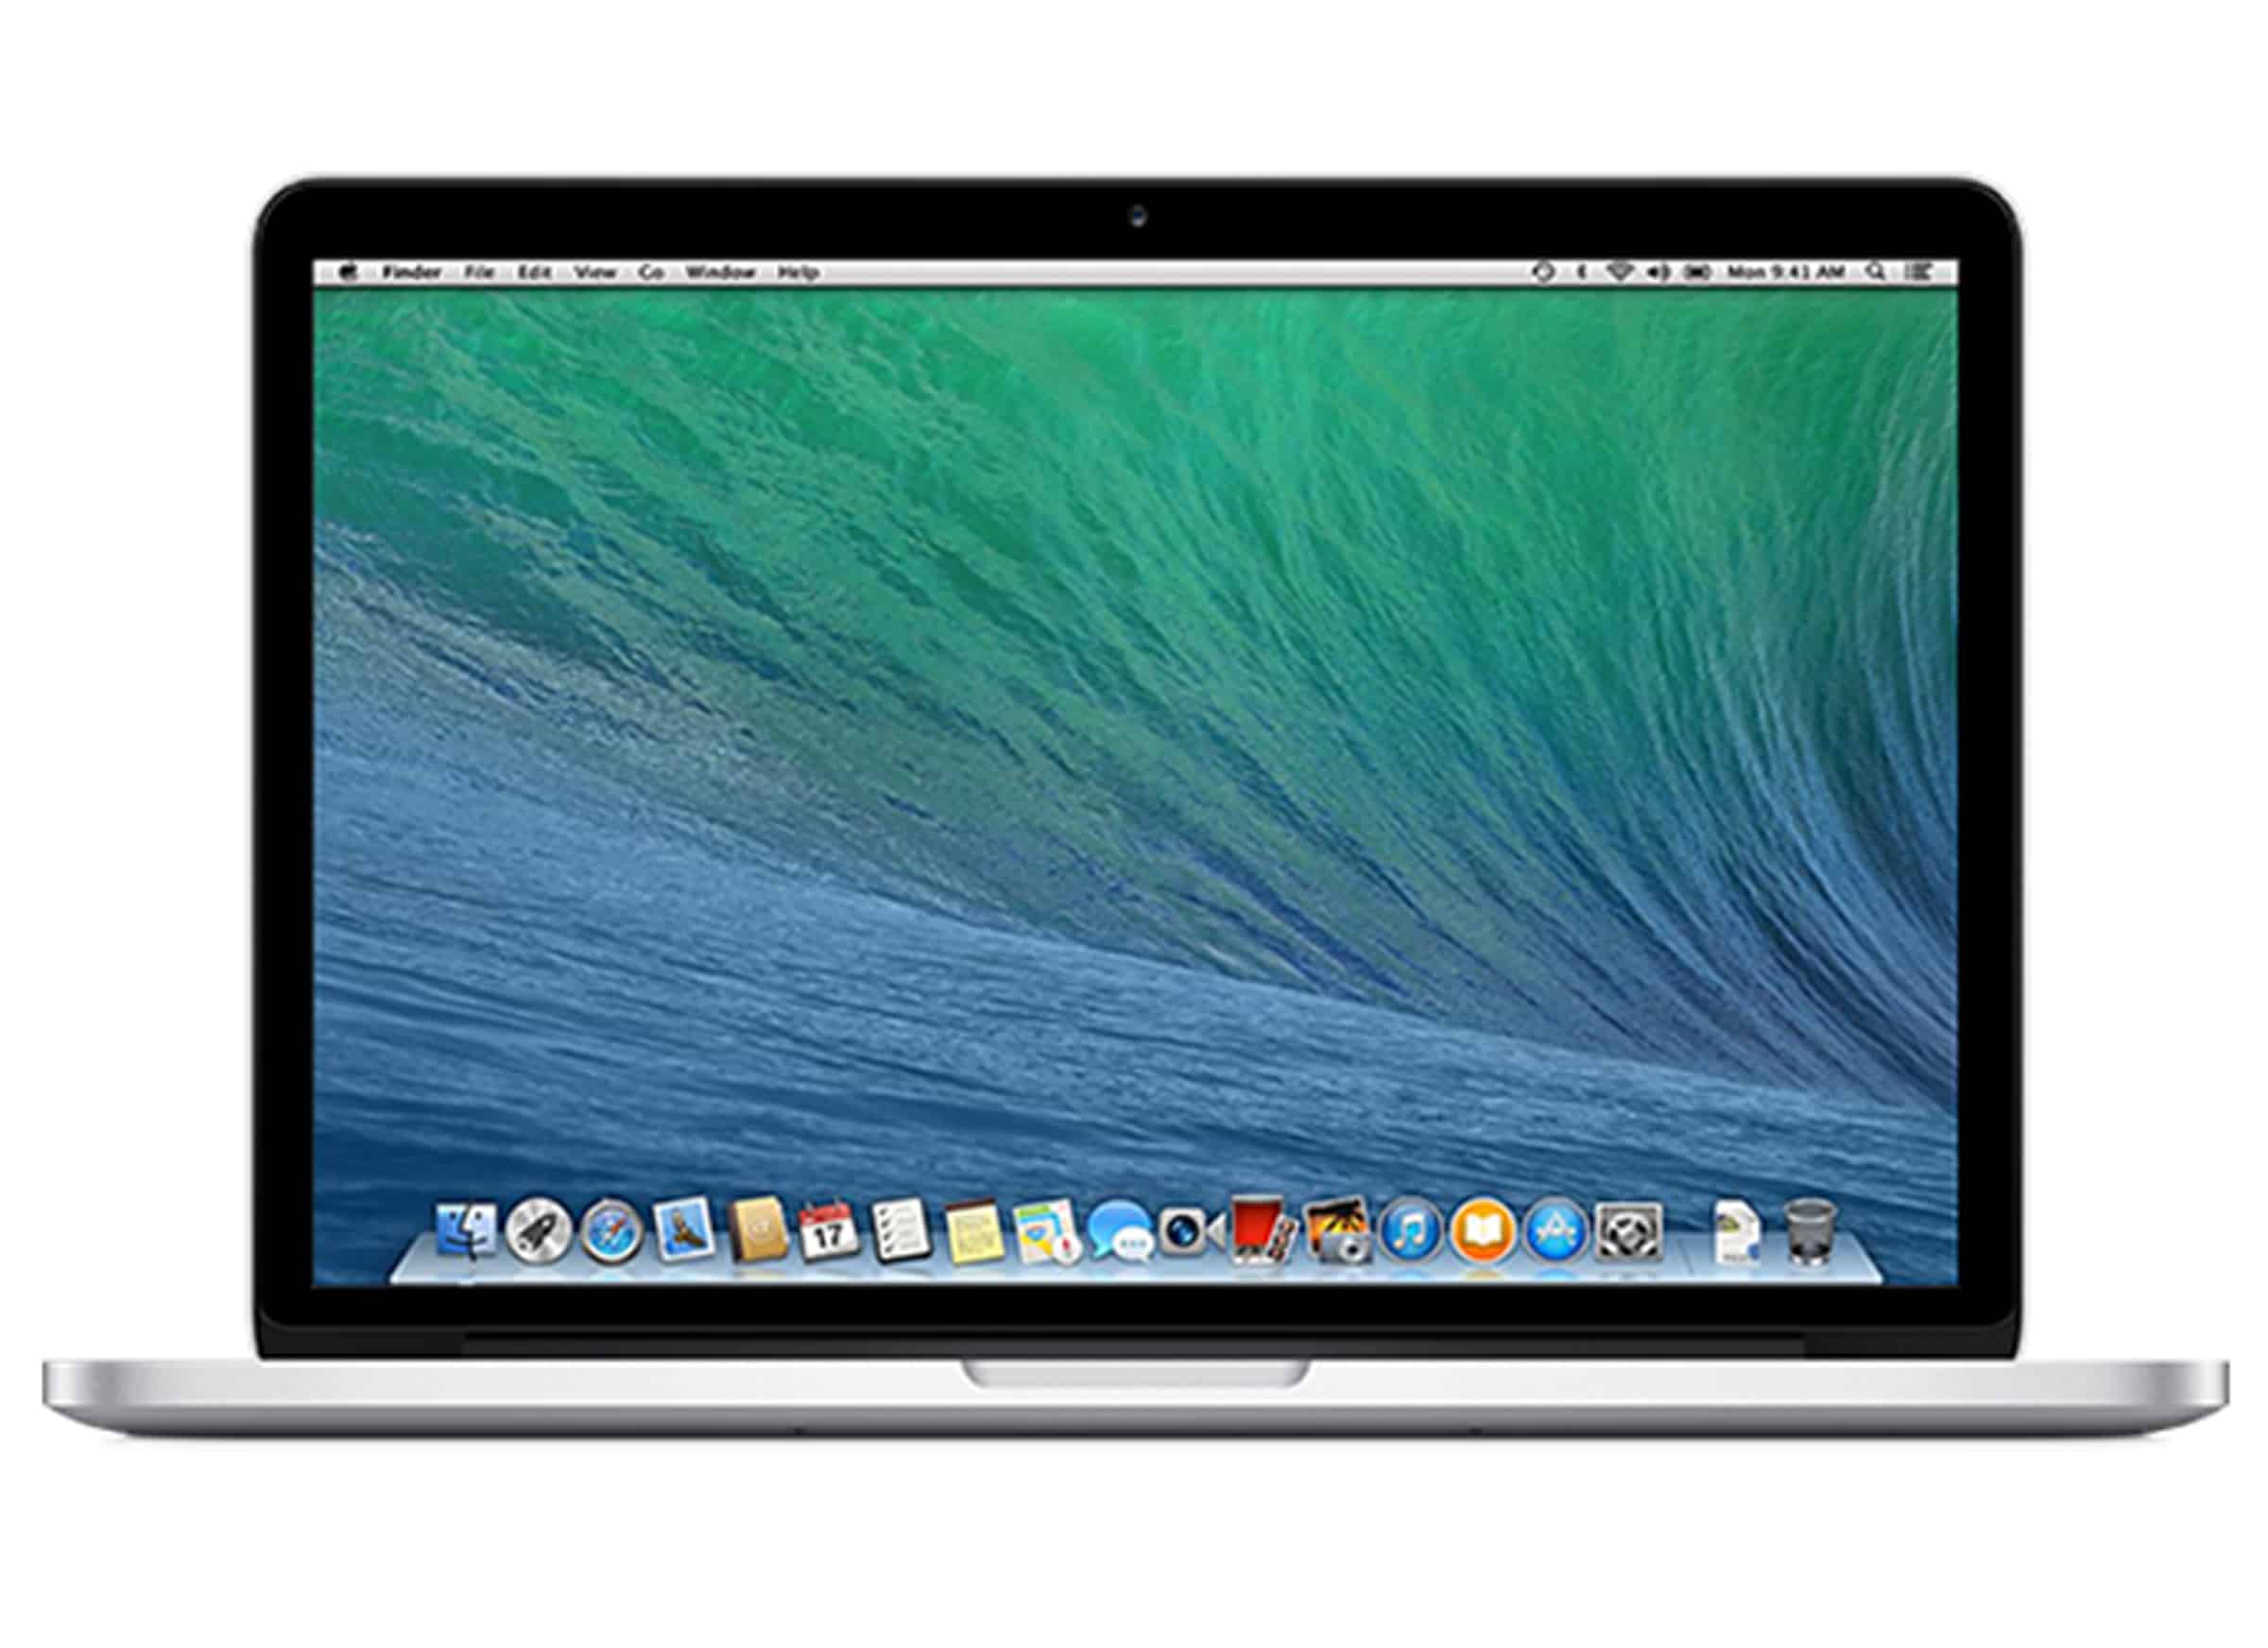 Экран ноутбука вертикальный. Apple MACBOOK Pro Retina, 13-inch, Mid 2014. Apple MACBOOK Pro model 1398. Apple MACBOOK Pro 13 late 2013. Apple MACBOOK Pro 15,4» Retina.